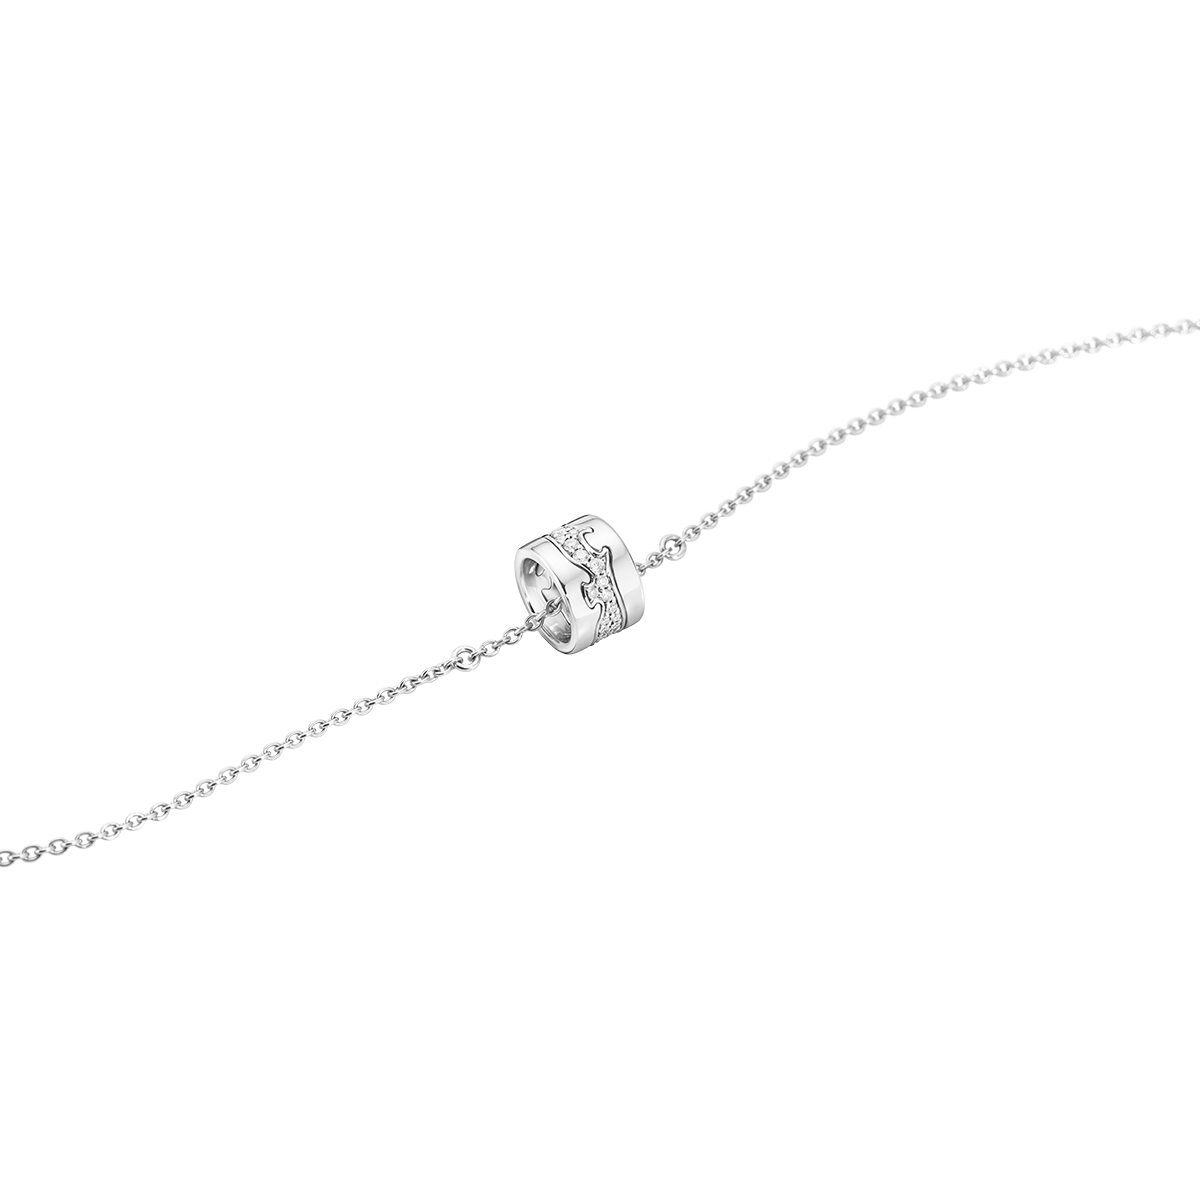 Fusion armbånd med diamanter - sølv fra Georg Jensen